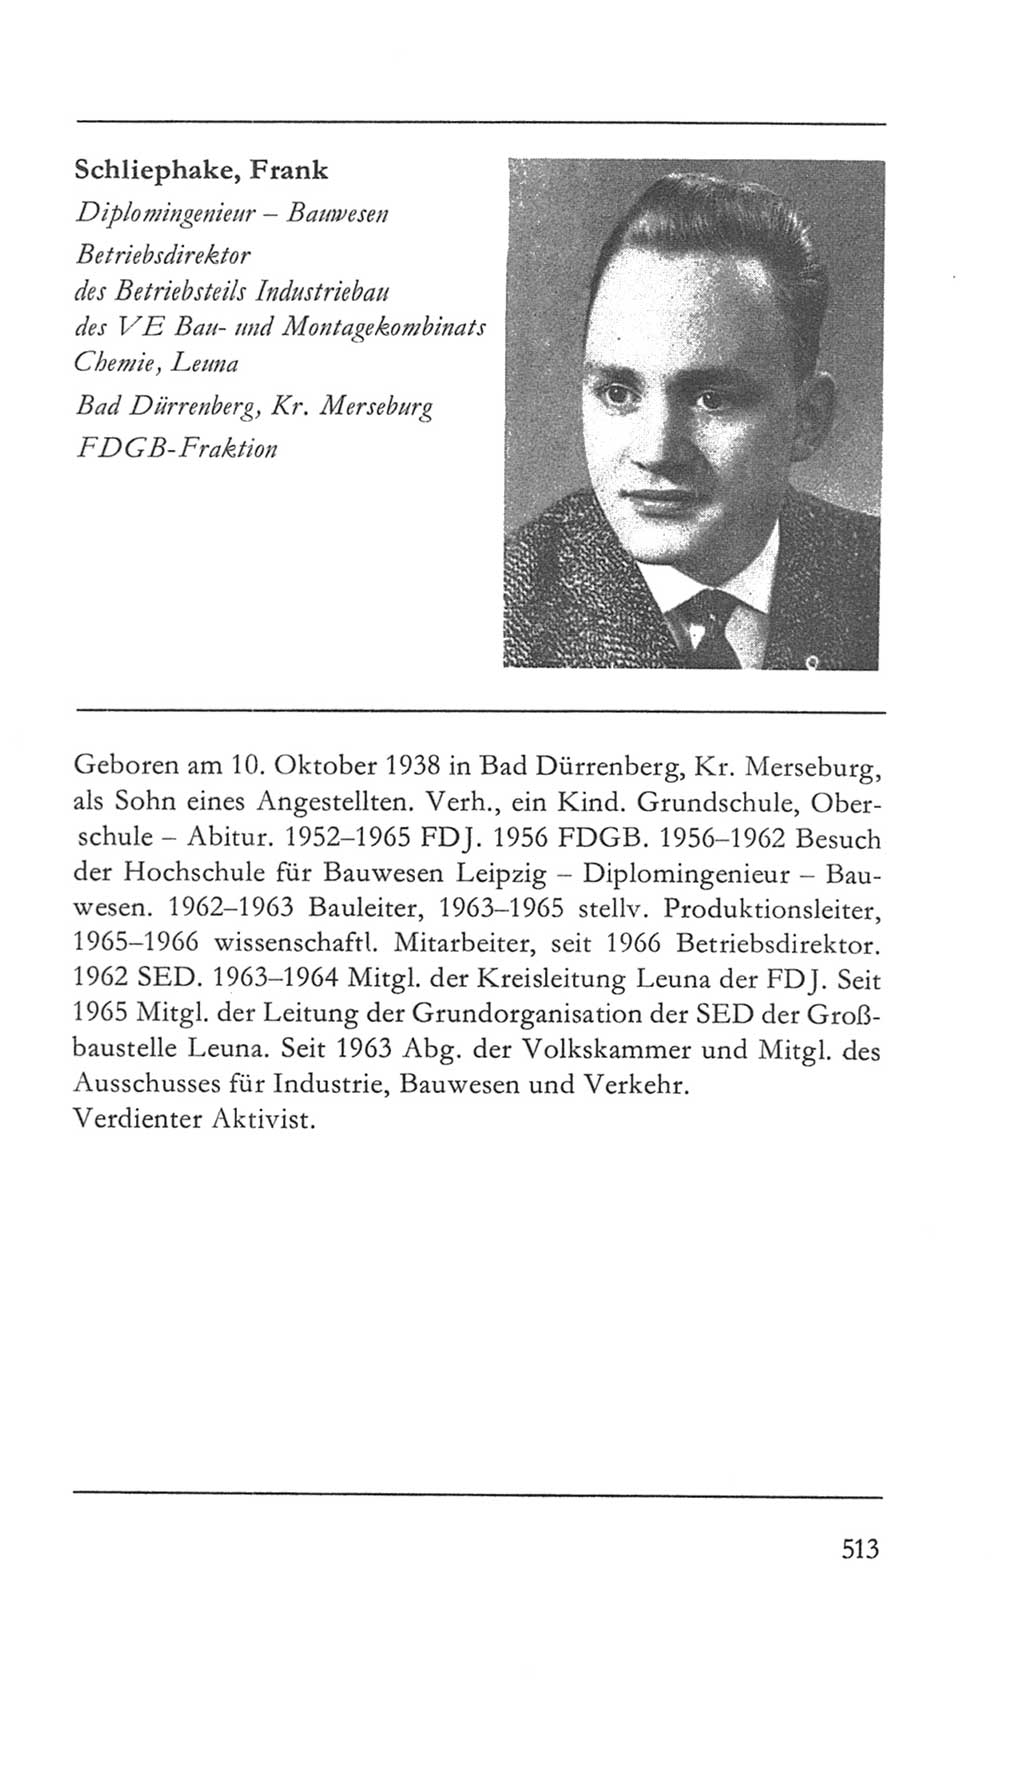 Volkskammer (VK) der Deutschen Demokratischen Republik (DDR) 5. Wahlperiode 1967-1971, Seite 513 (VK. DDR 5. WP. 1967-1971, S. 513)